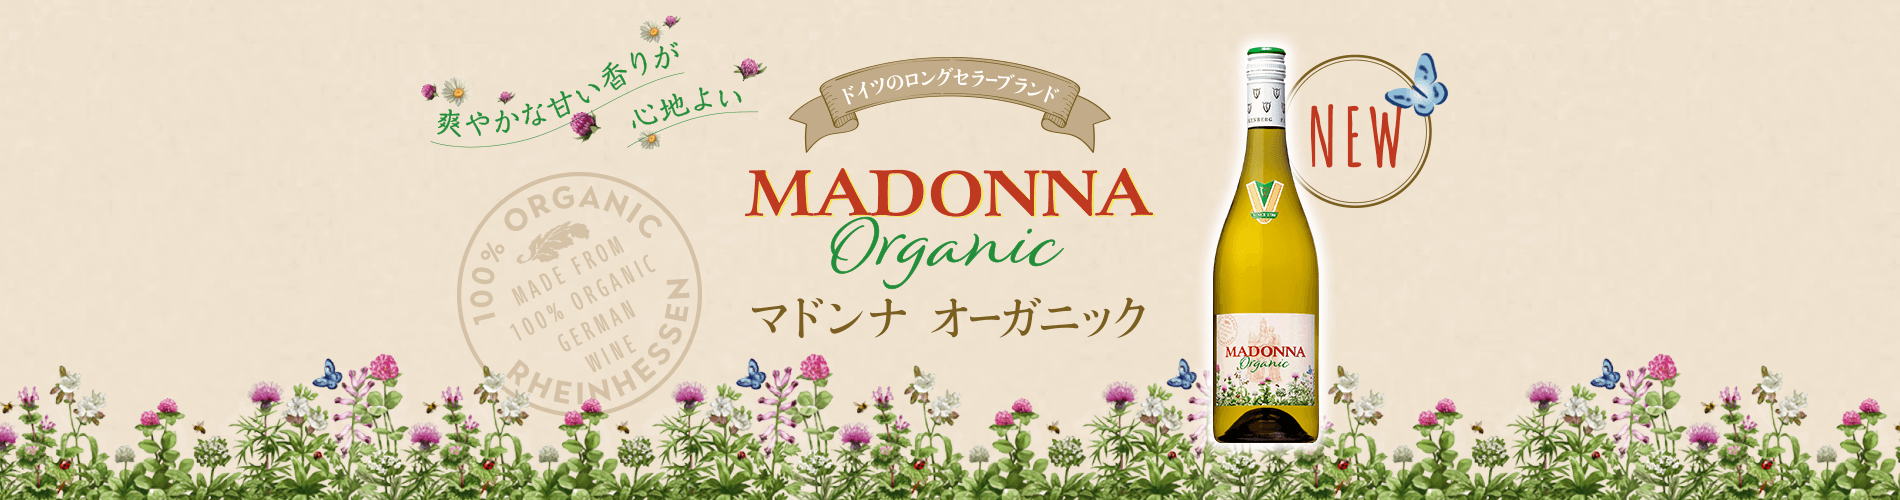 爽やかな甘い香りが心地よい ドイツのロングセラーブランド MADONNA Organic マドンナ オーガニック NEW